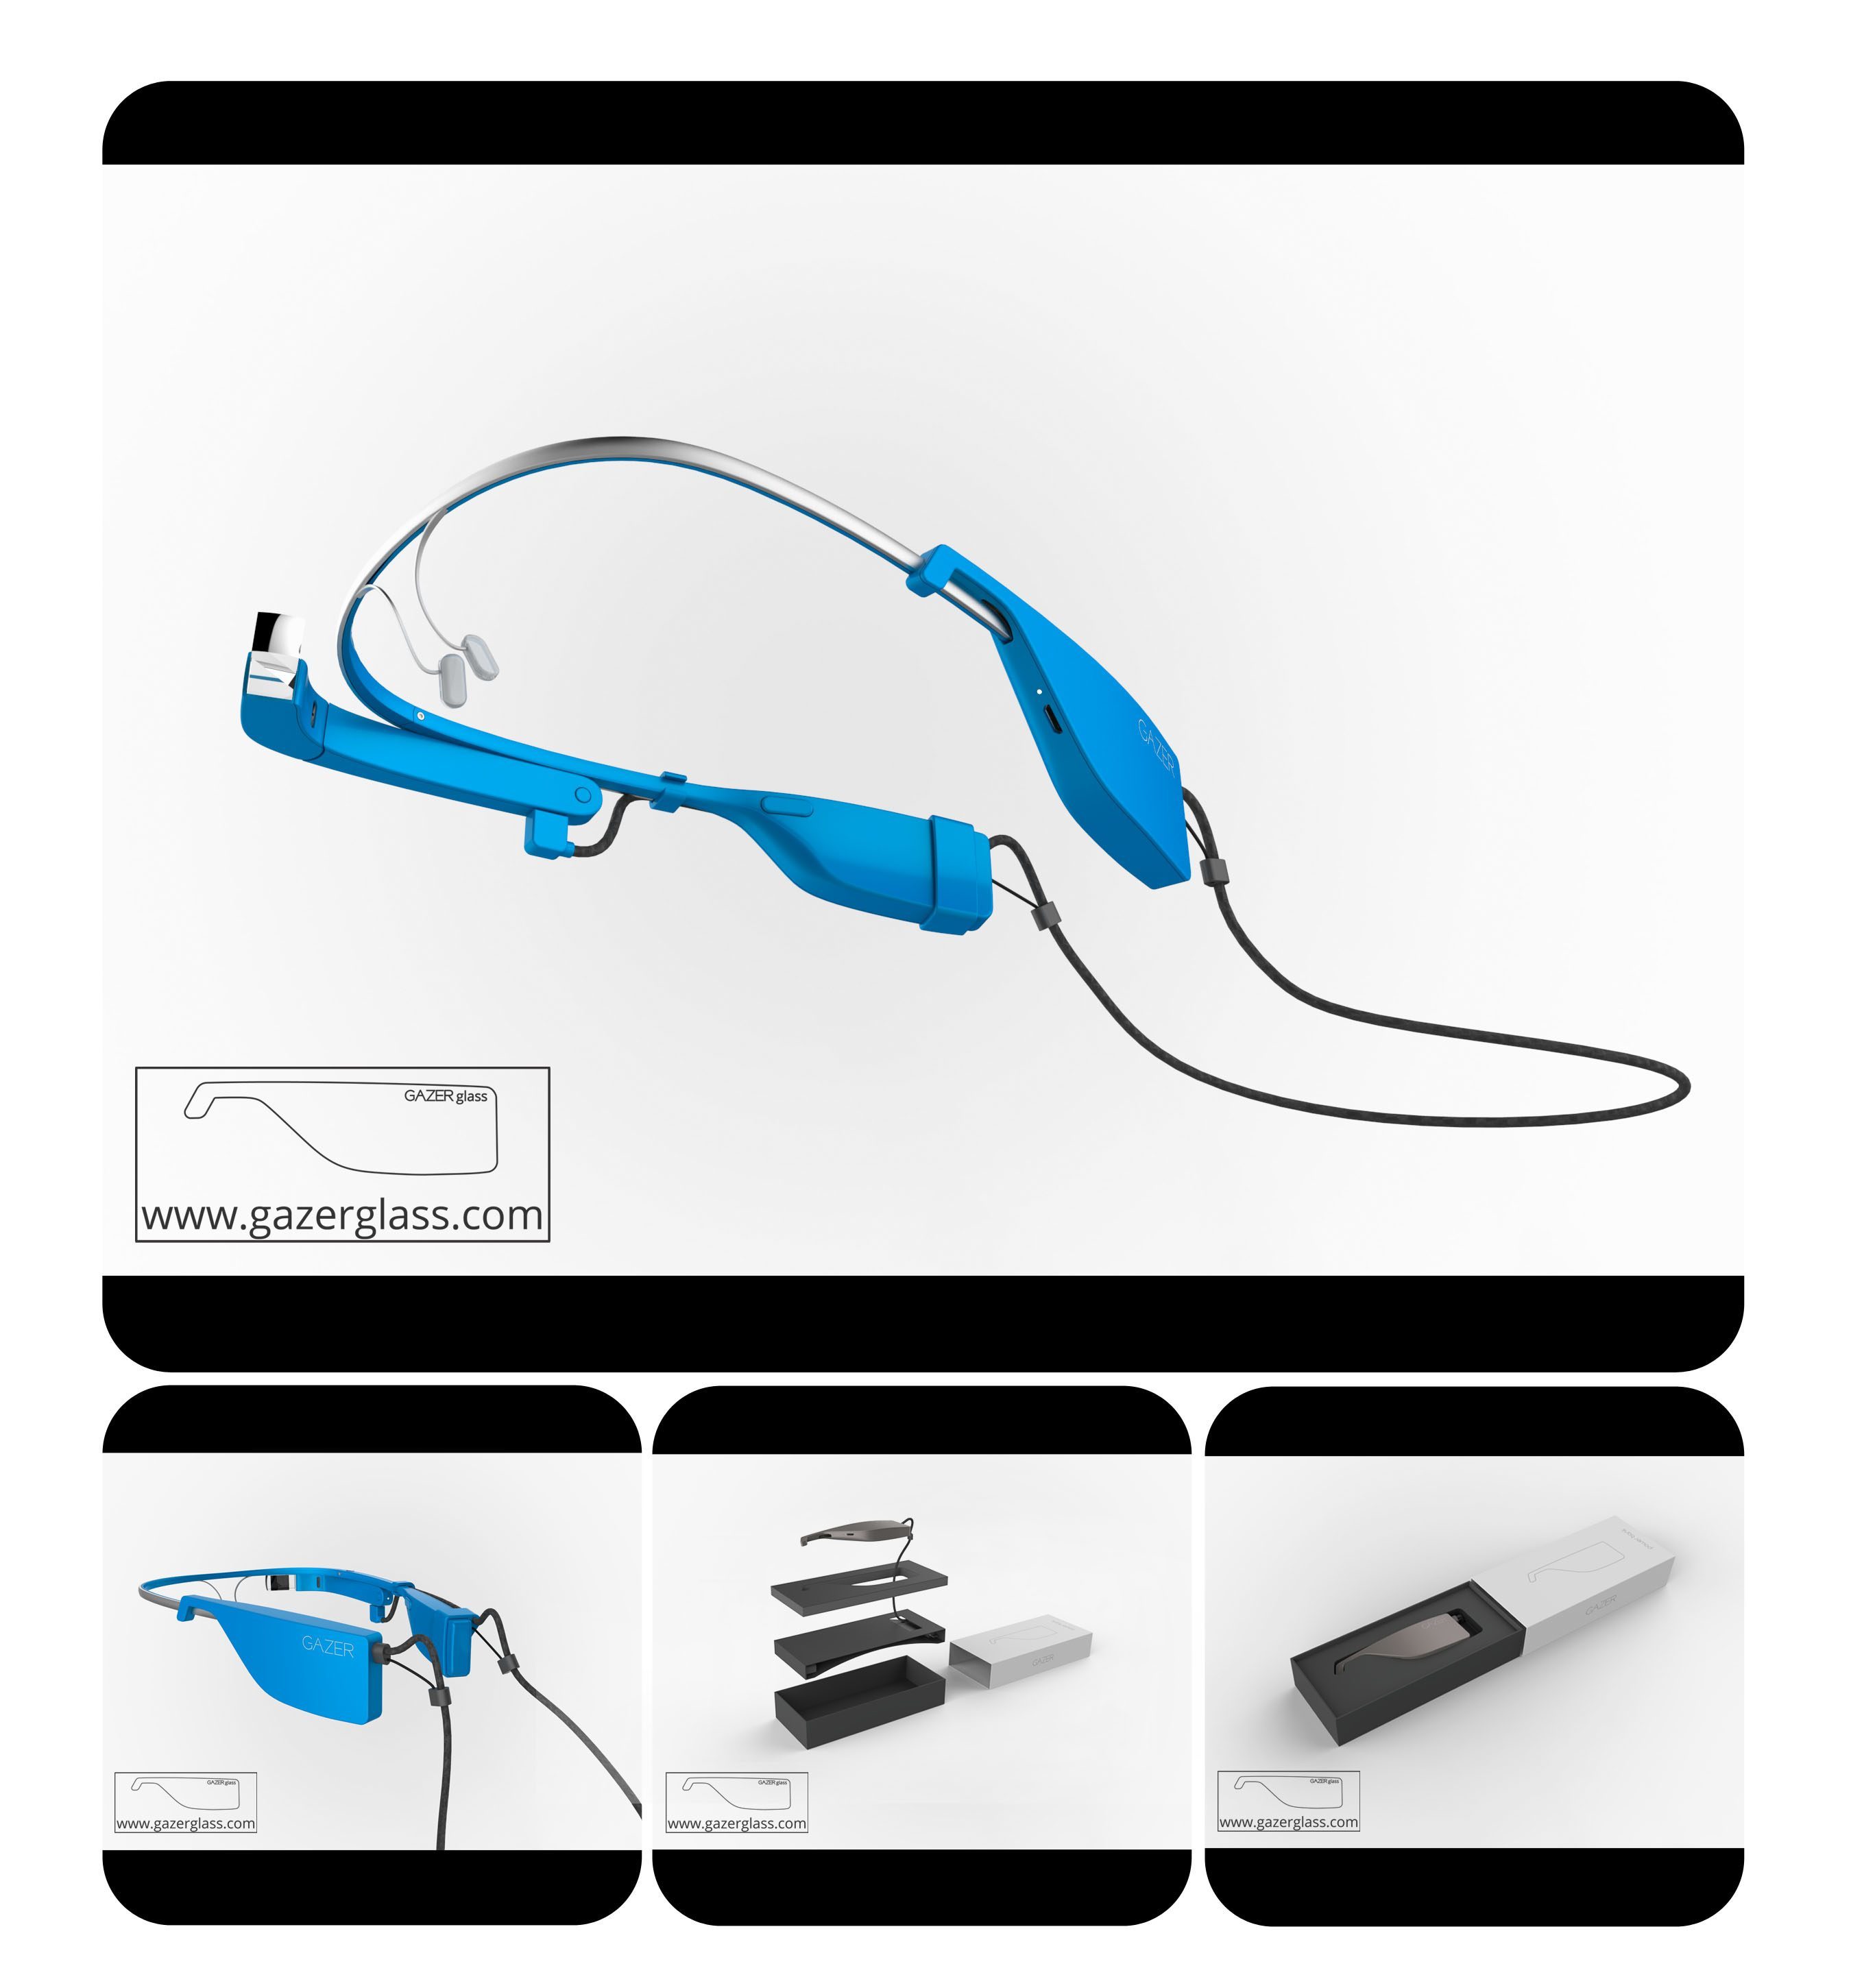 GAZERglass Power Bank Battery for Google Glass - Cool Wearable